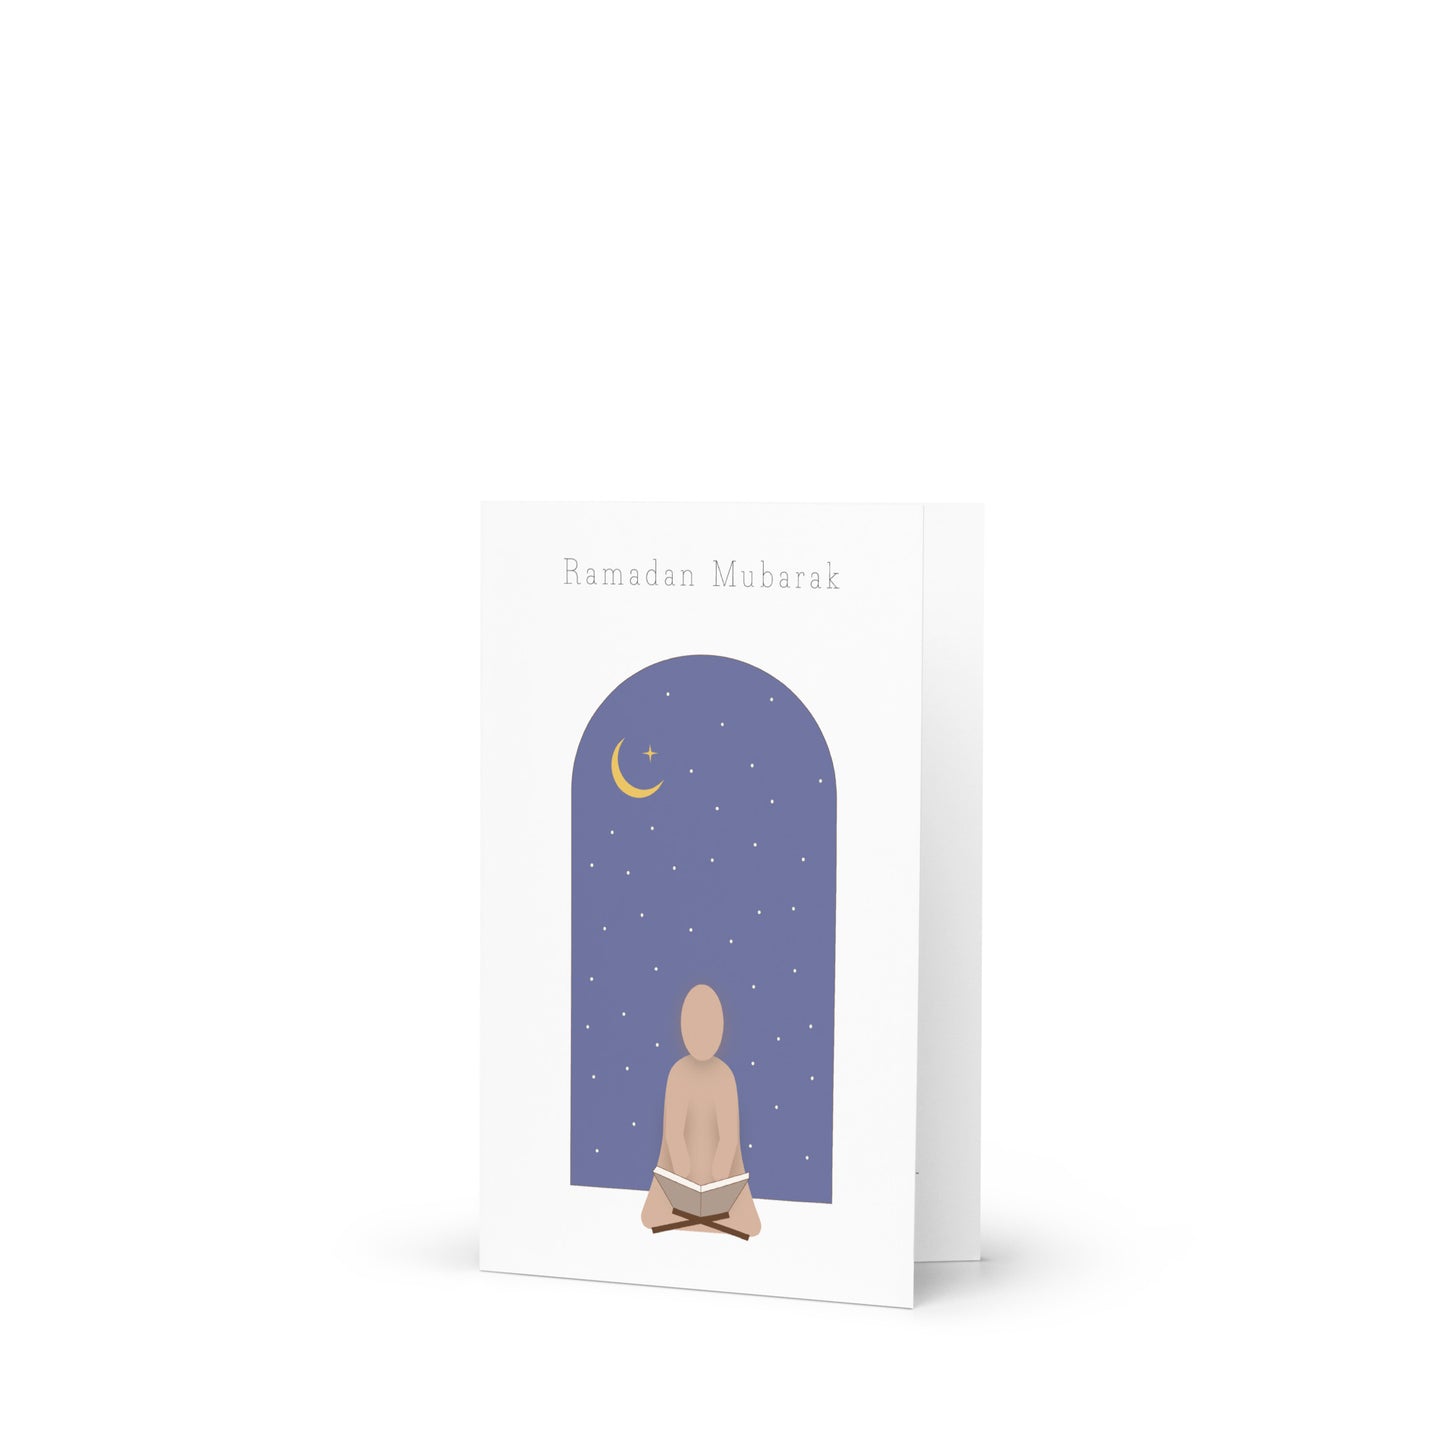 Ramadan Mubarak - Greeting card